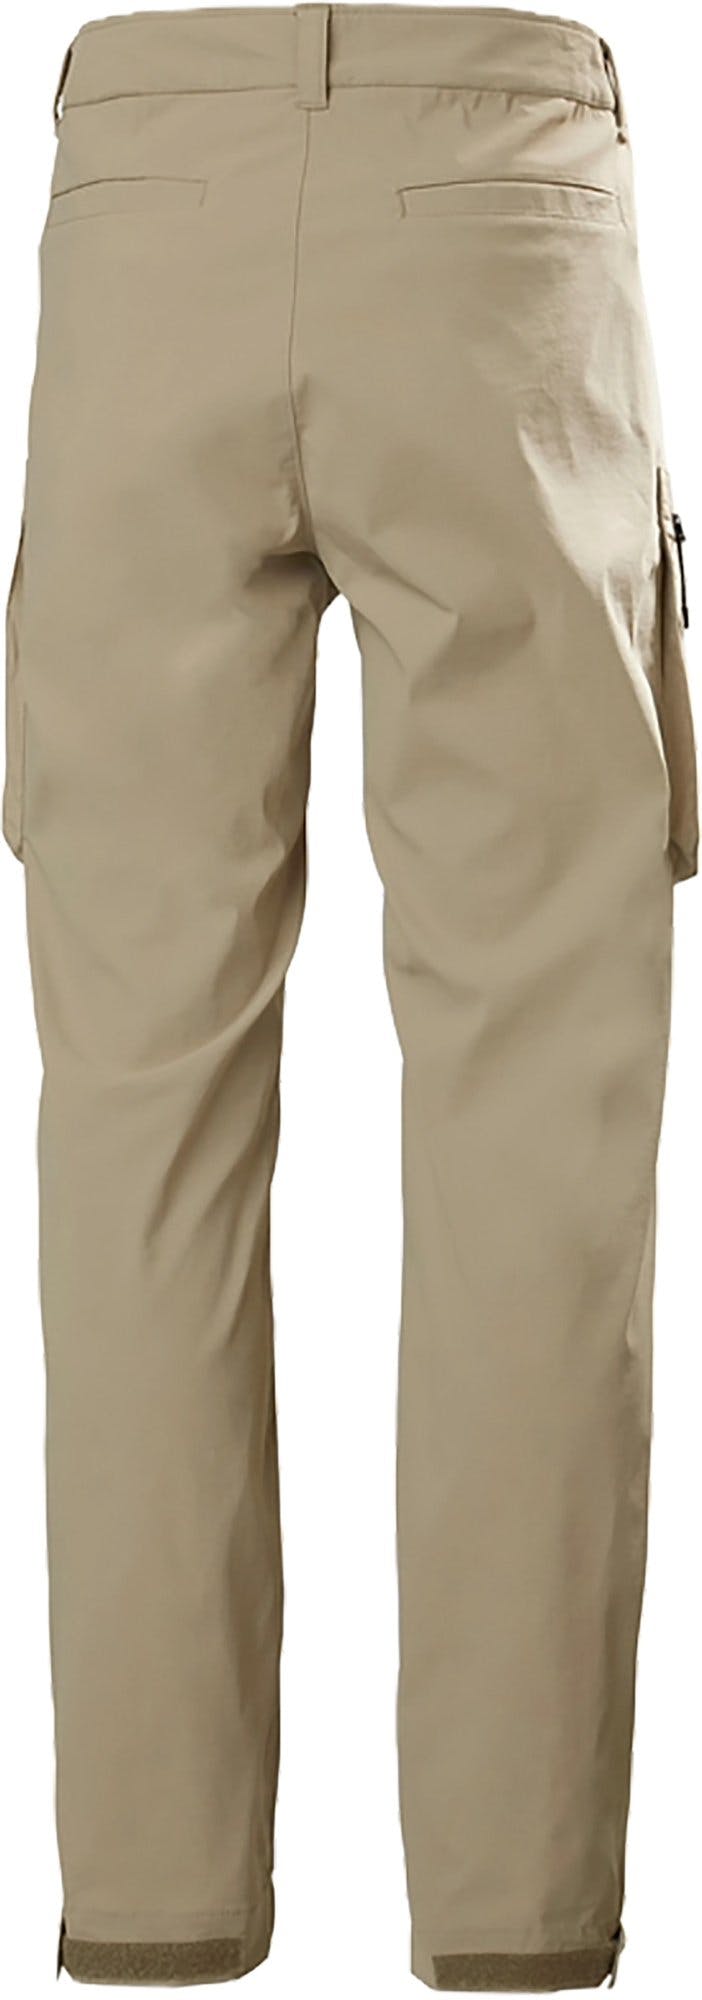 Numéro de l'image de la galerie de produits 4 pour le produit Pantalon Move Quick-Dry 2.0 - Homme